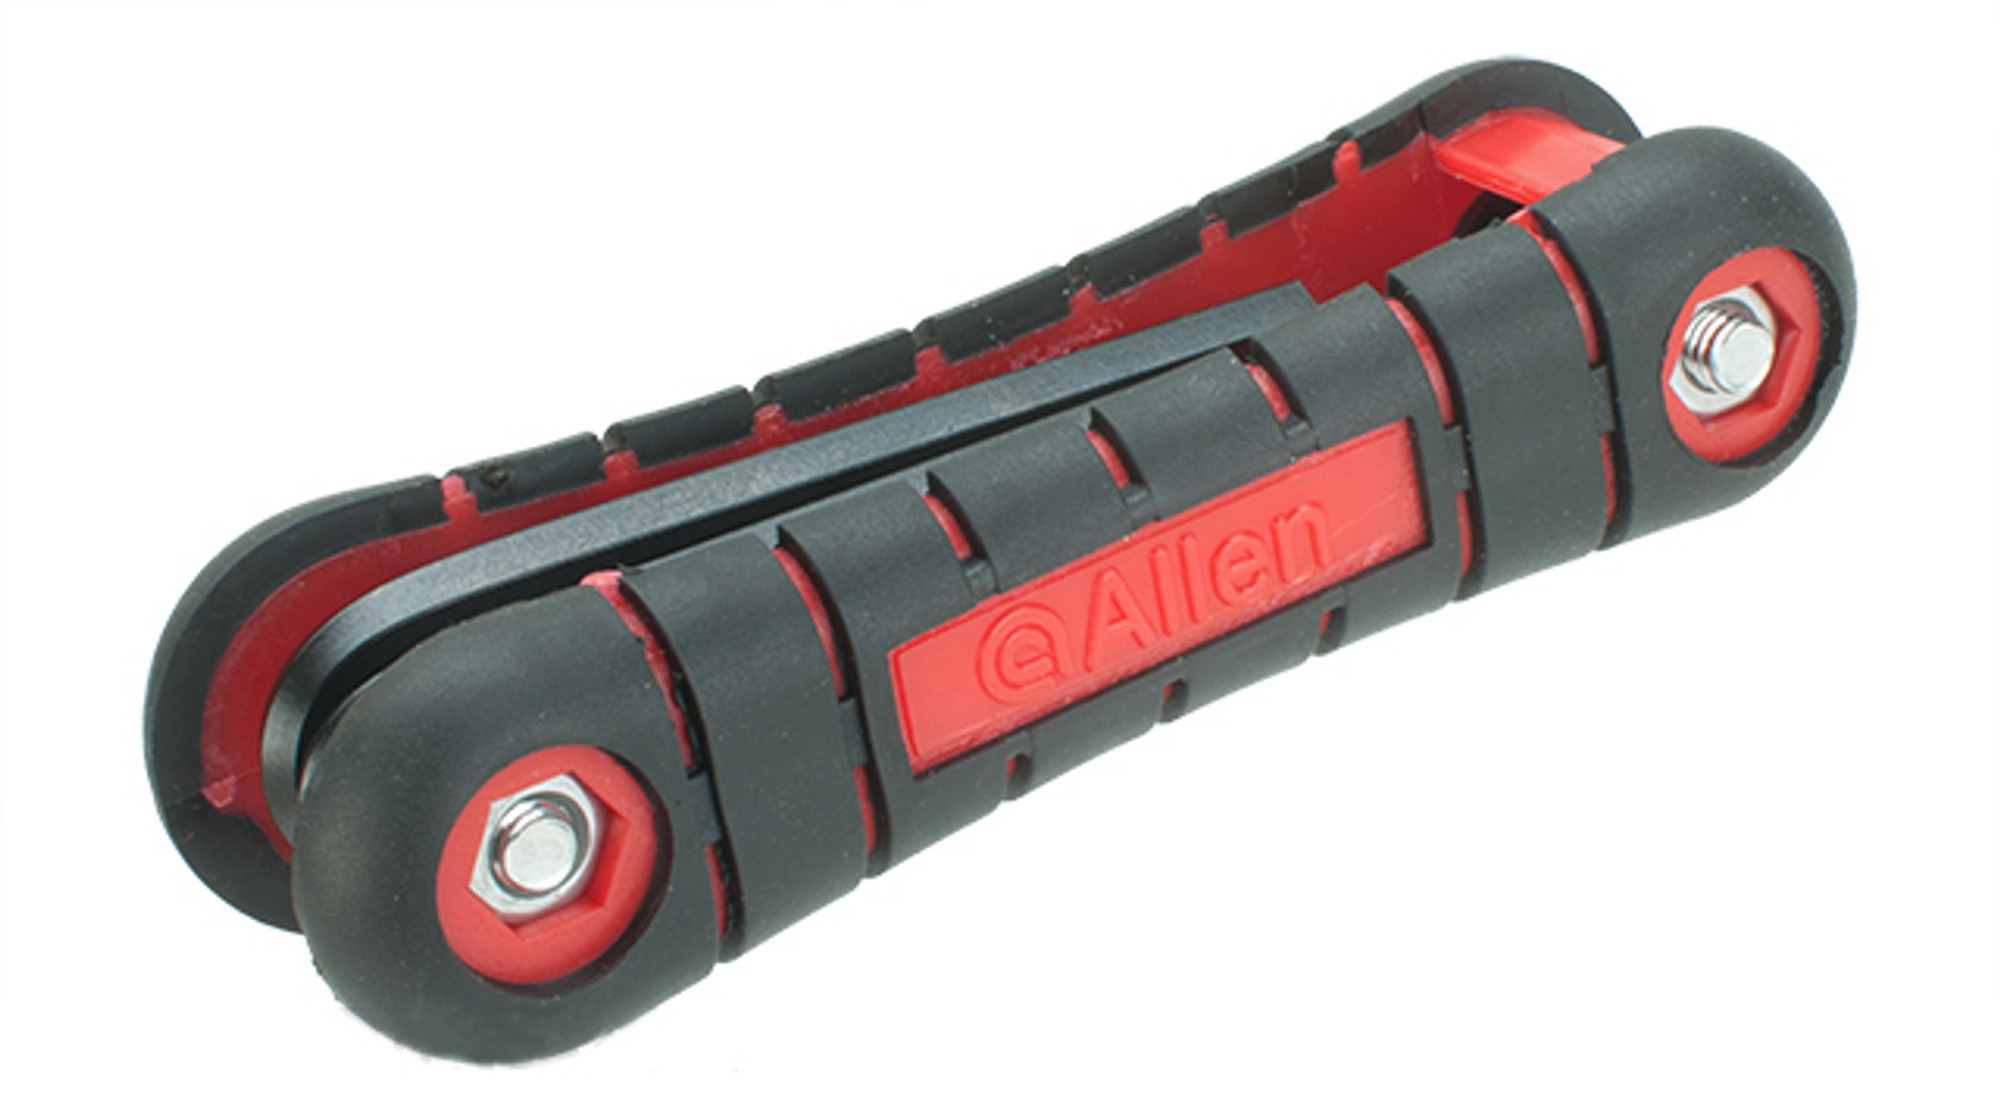 Allen Pro Series 10-in-1 Multi-Wrench Hex Key Set